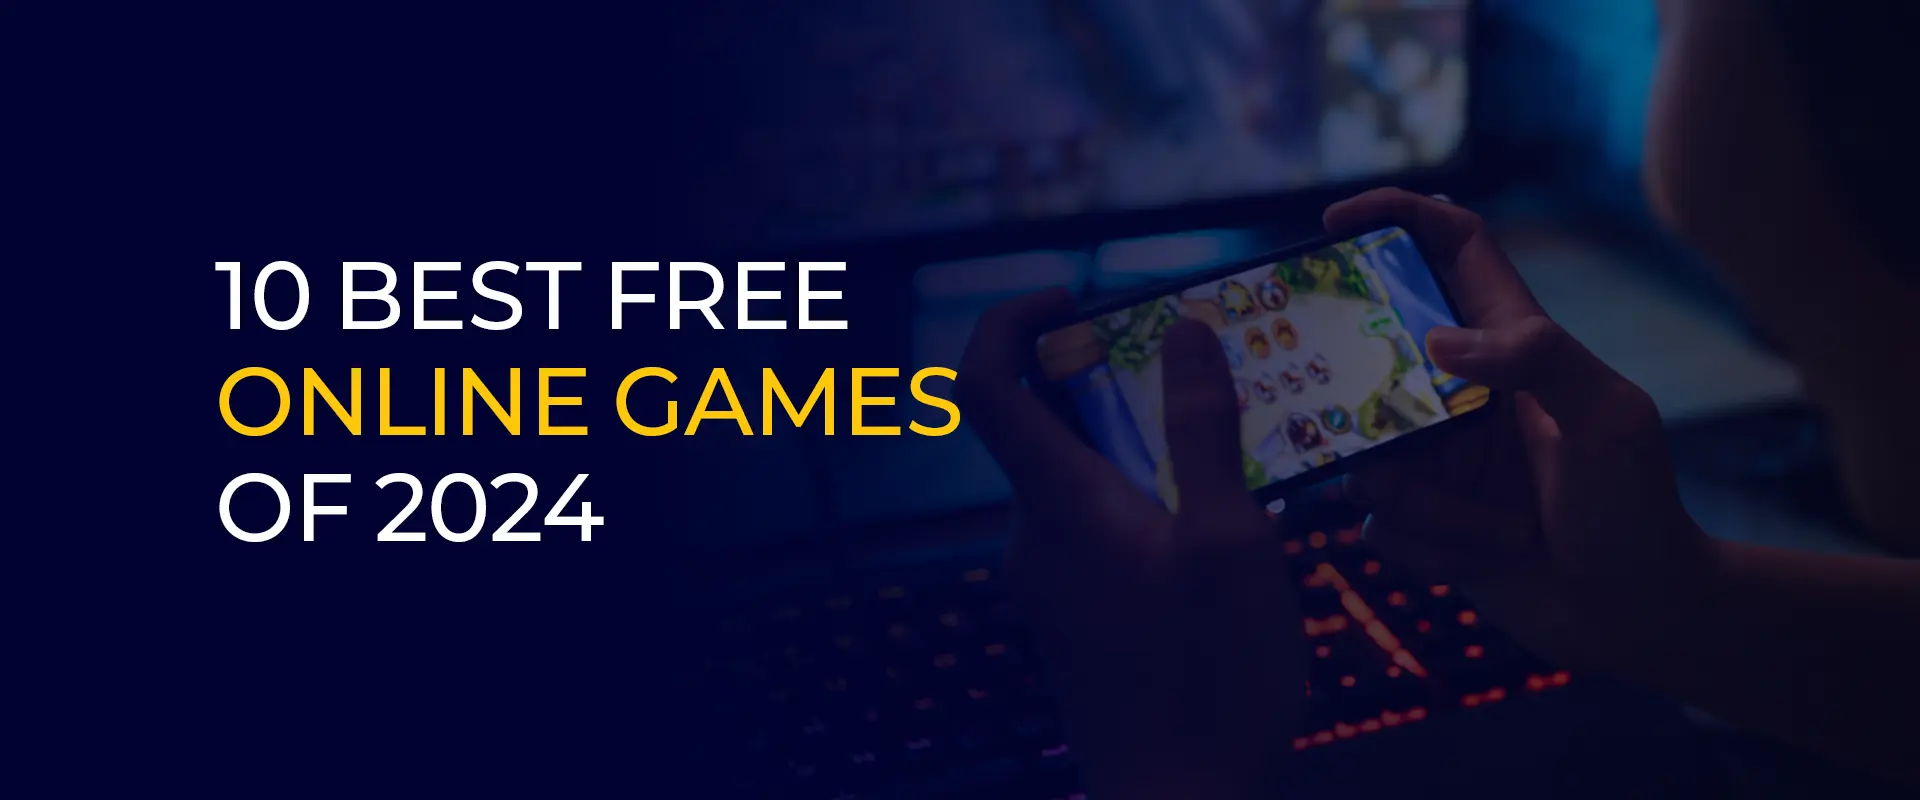 Beste gratis online games van 2024